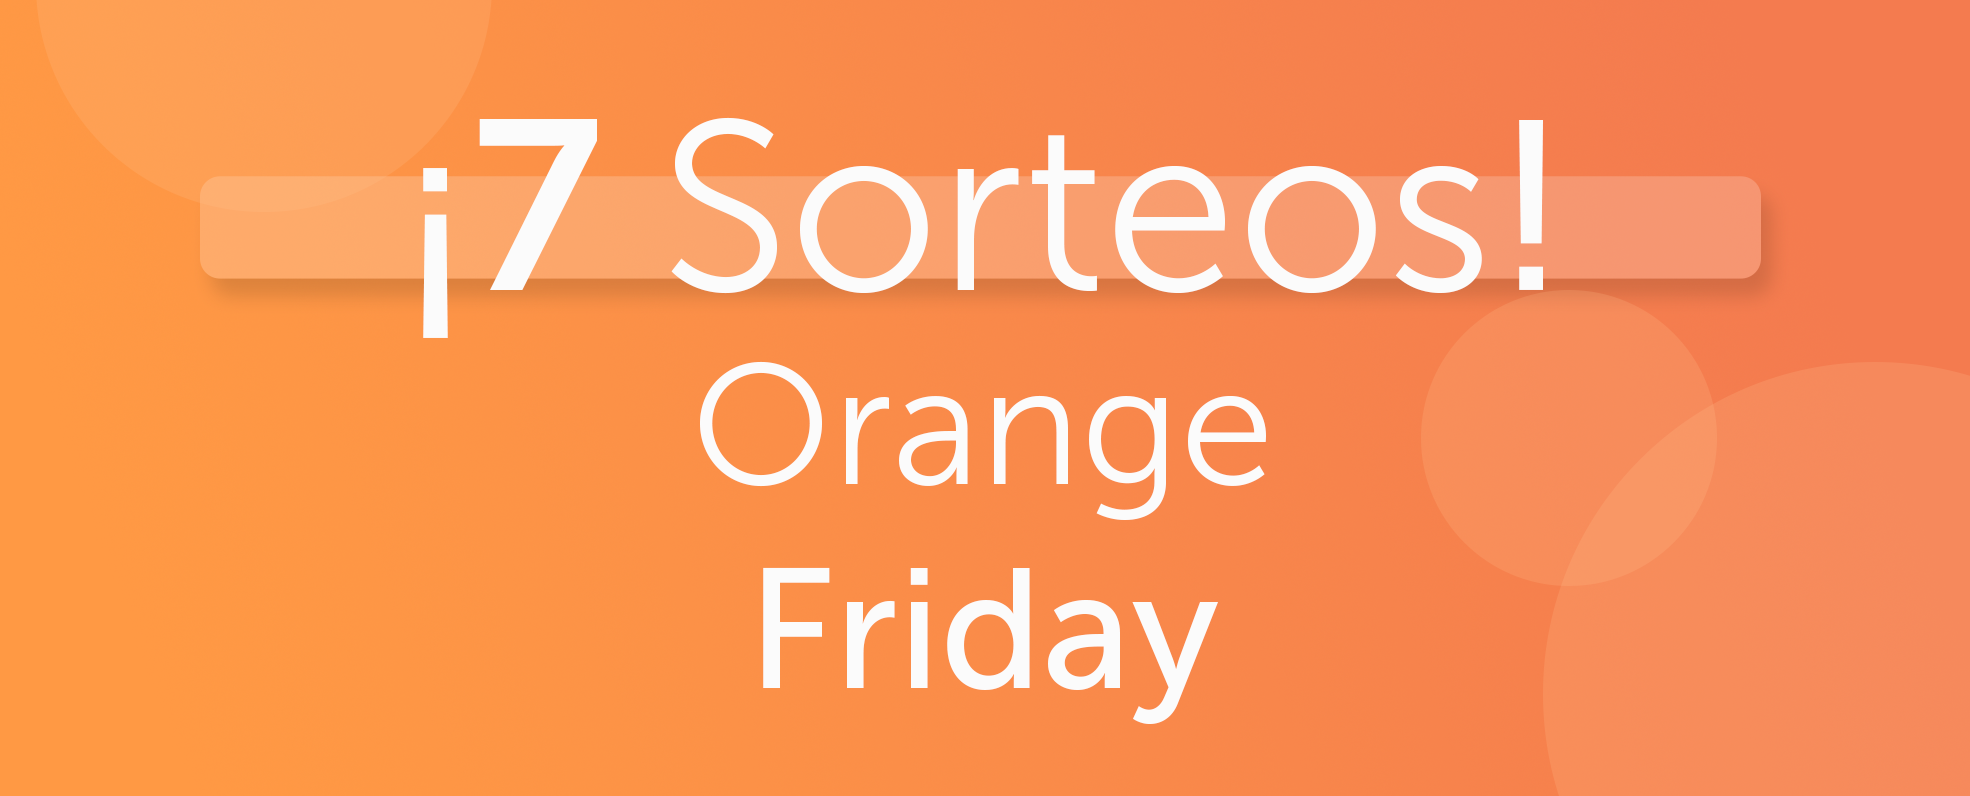 7 Sorteos Orange Friday Farmacia Jiménez